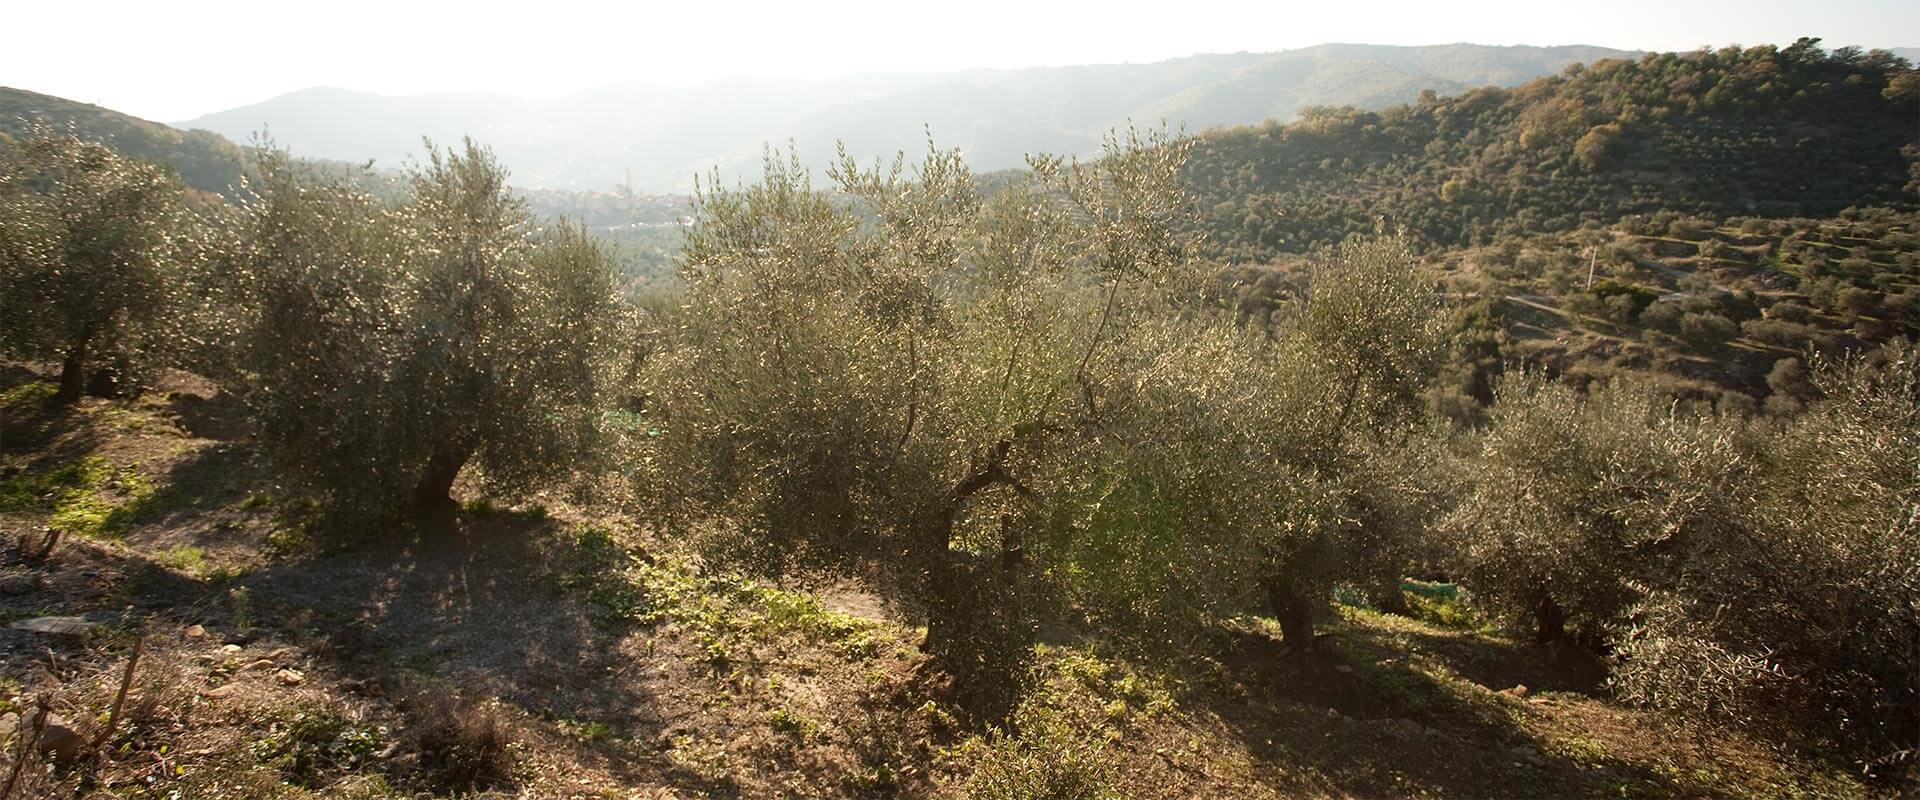 Come piantare un albero di ulivo – Fratelli Carli